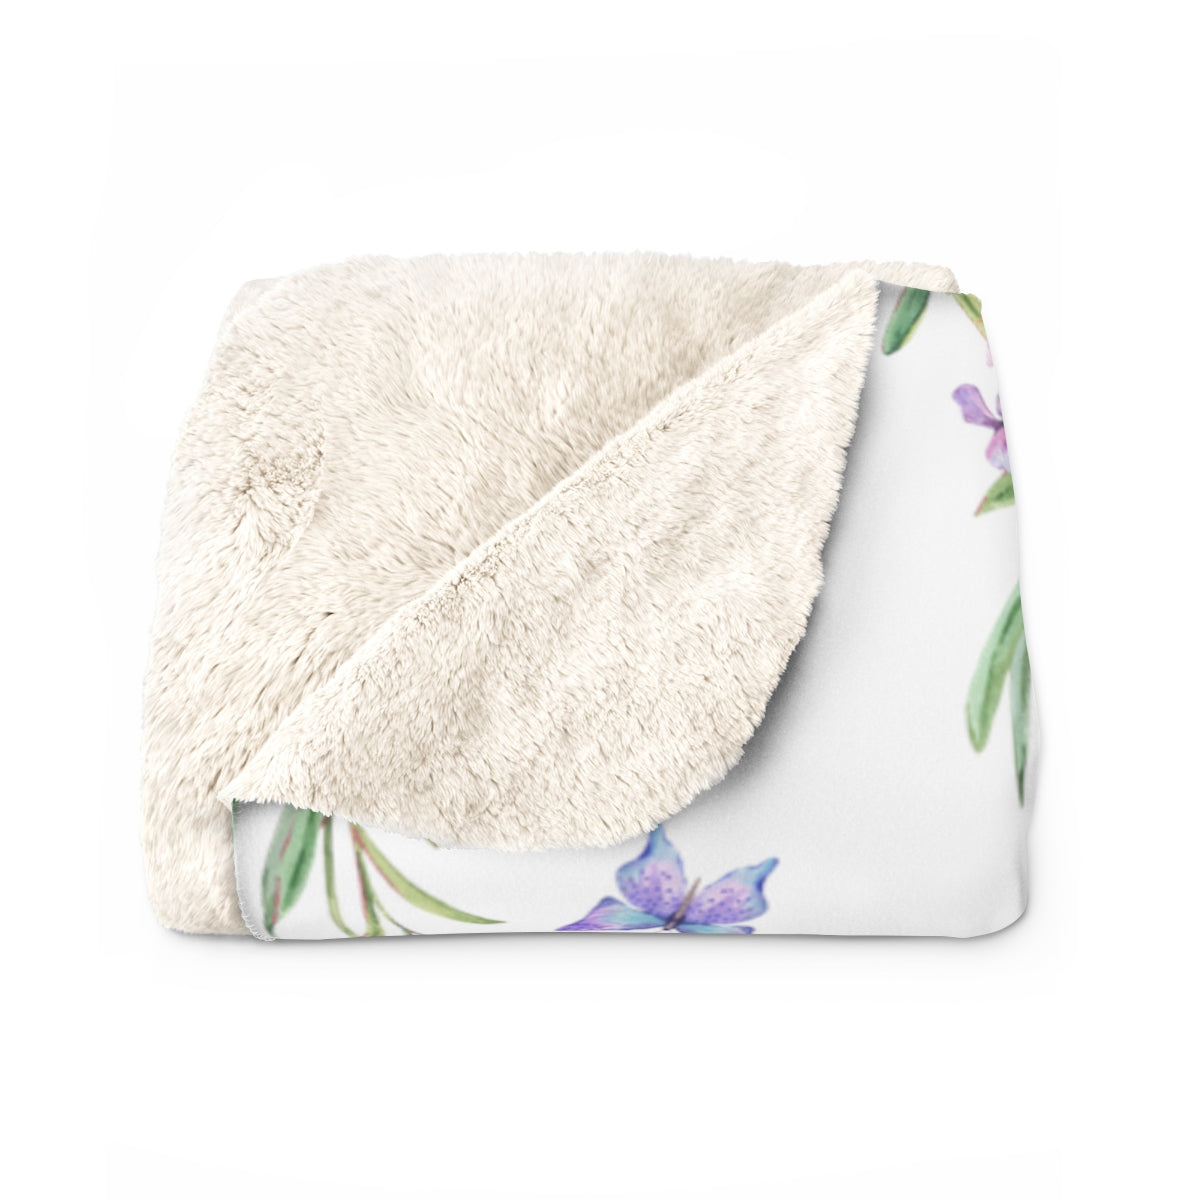 Personalized Blanket / Lavender Blanket / Purple Nursery Blanket